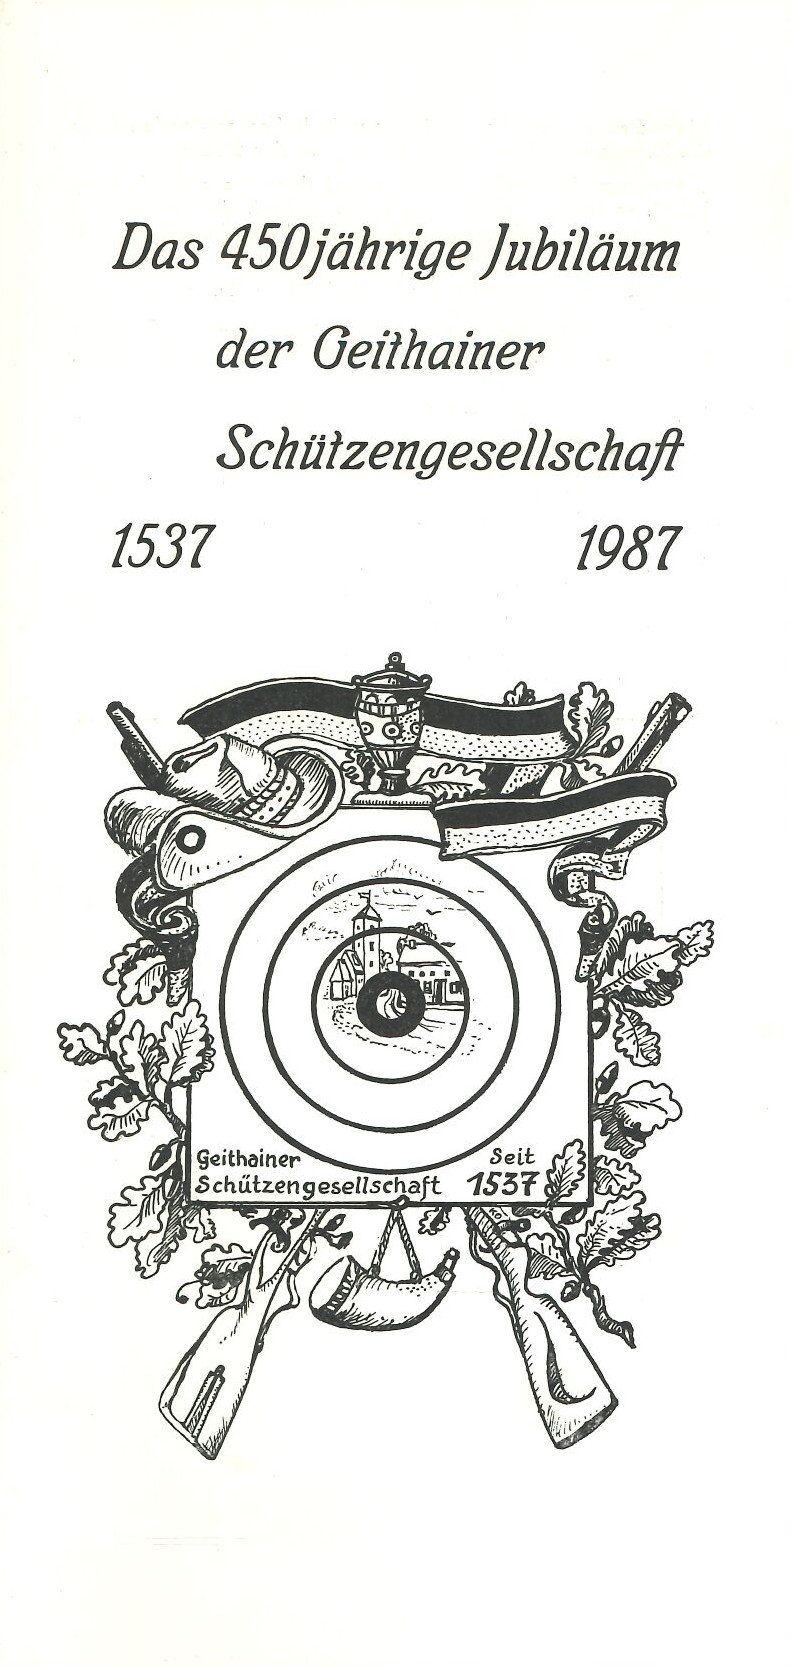 Das 450-jährige Jubiläum der Geithainer Schützengesellschaft 1537-1987 (Feuerwehrmuseum Grethen CC BY-NC-SA)